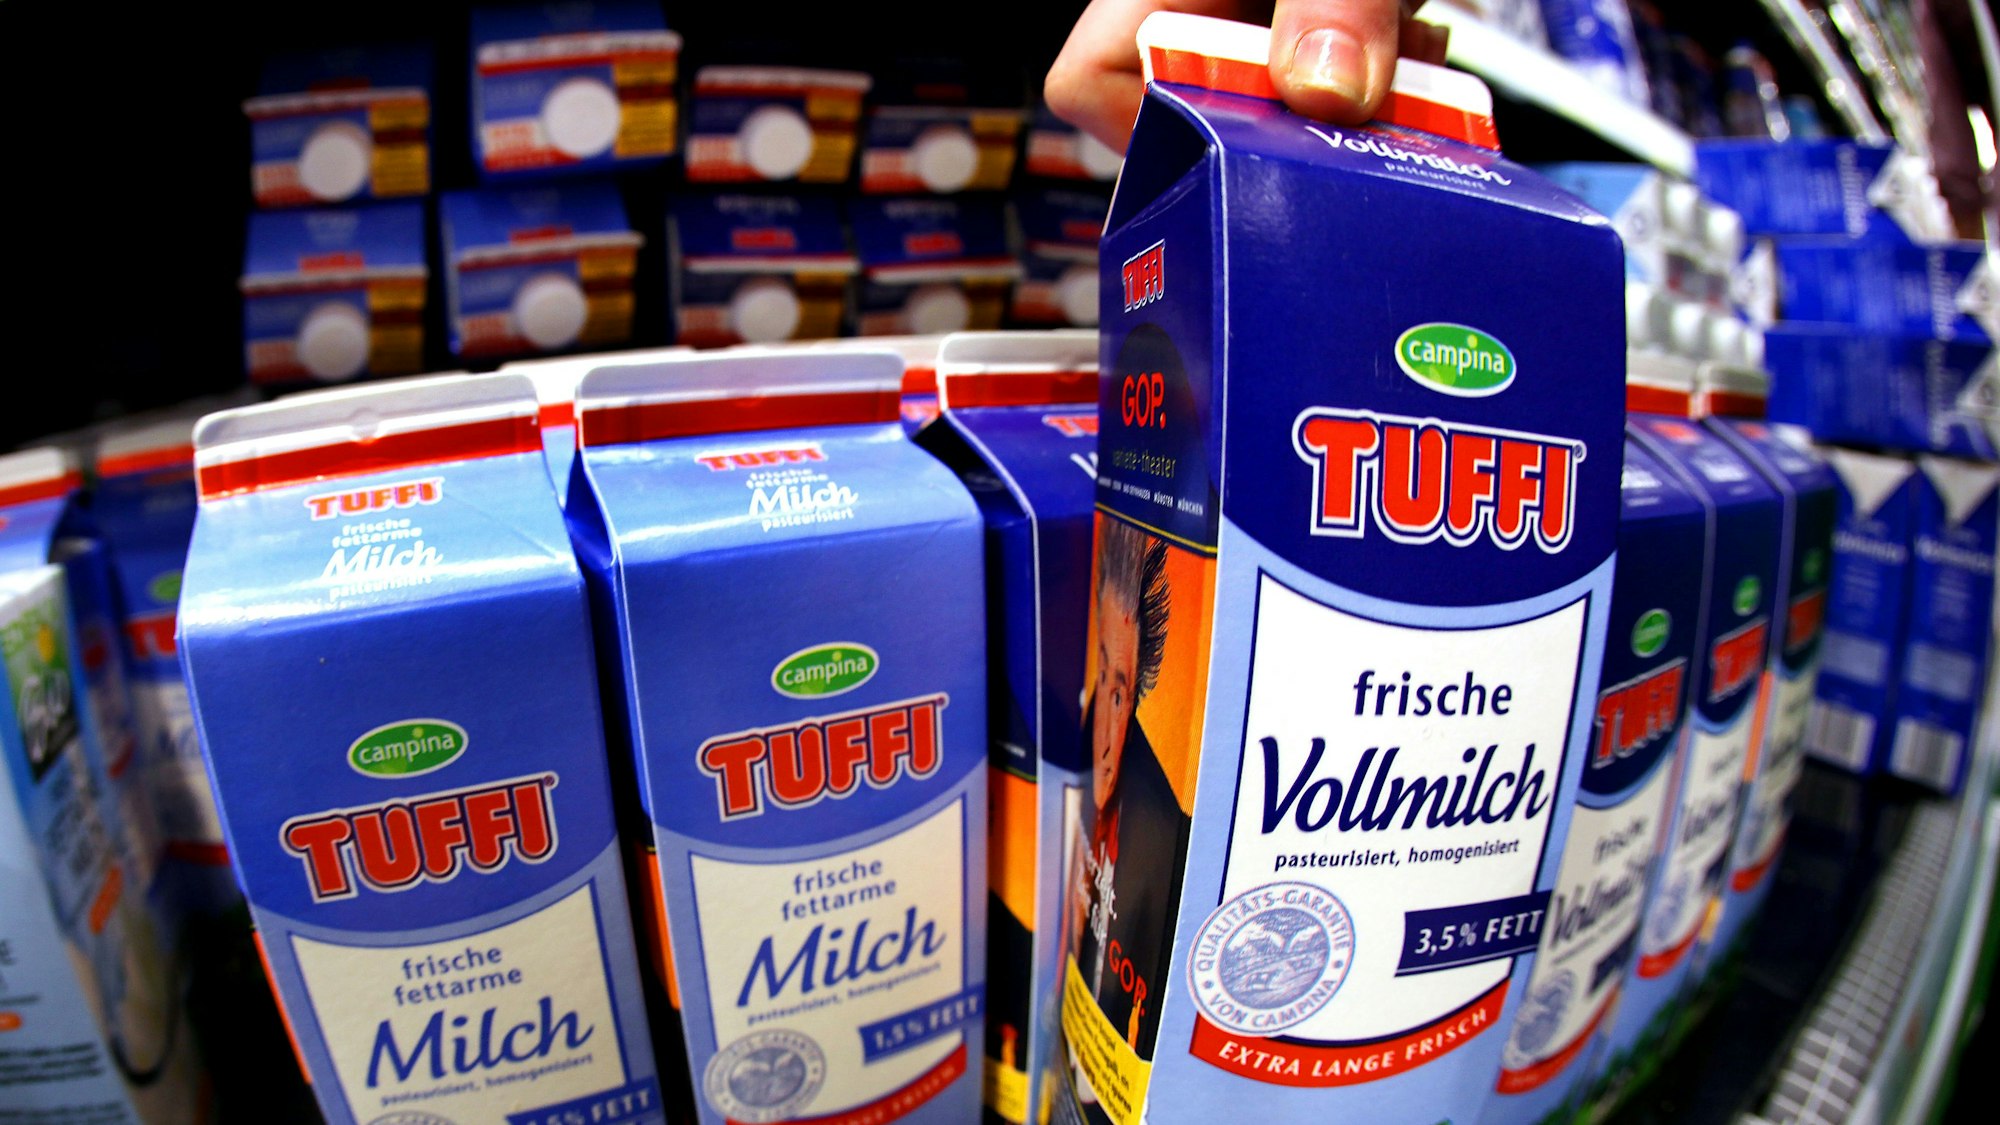 Eine Kundin nimmt in Köln eine Milchpackung (Campina/Tuffi) aus dem Kühlregal